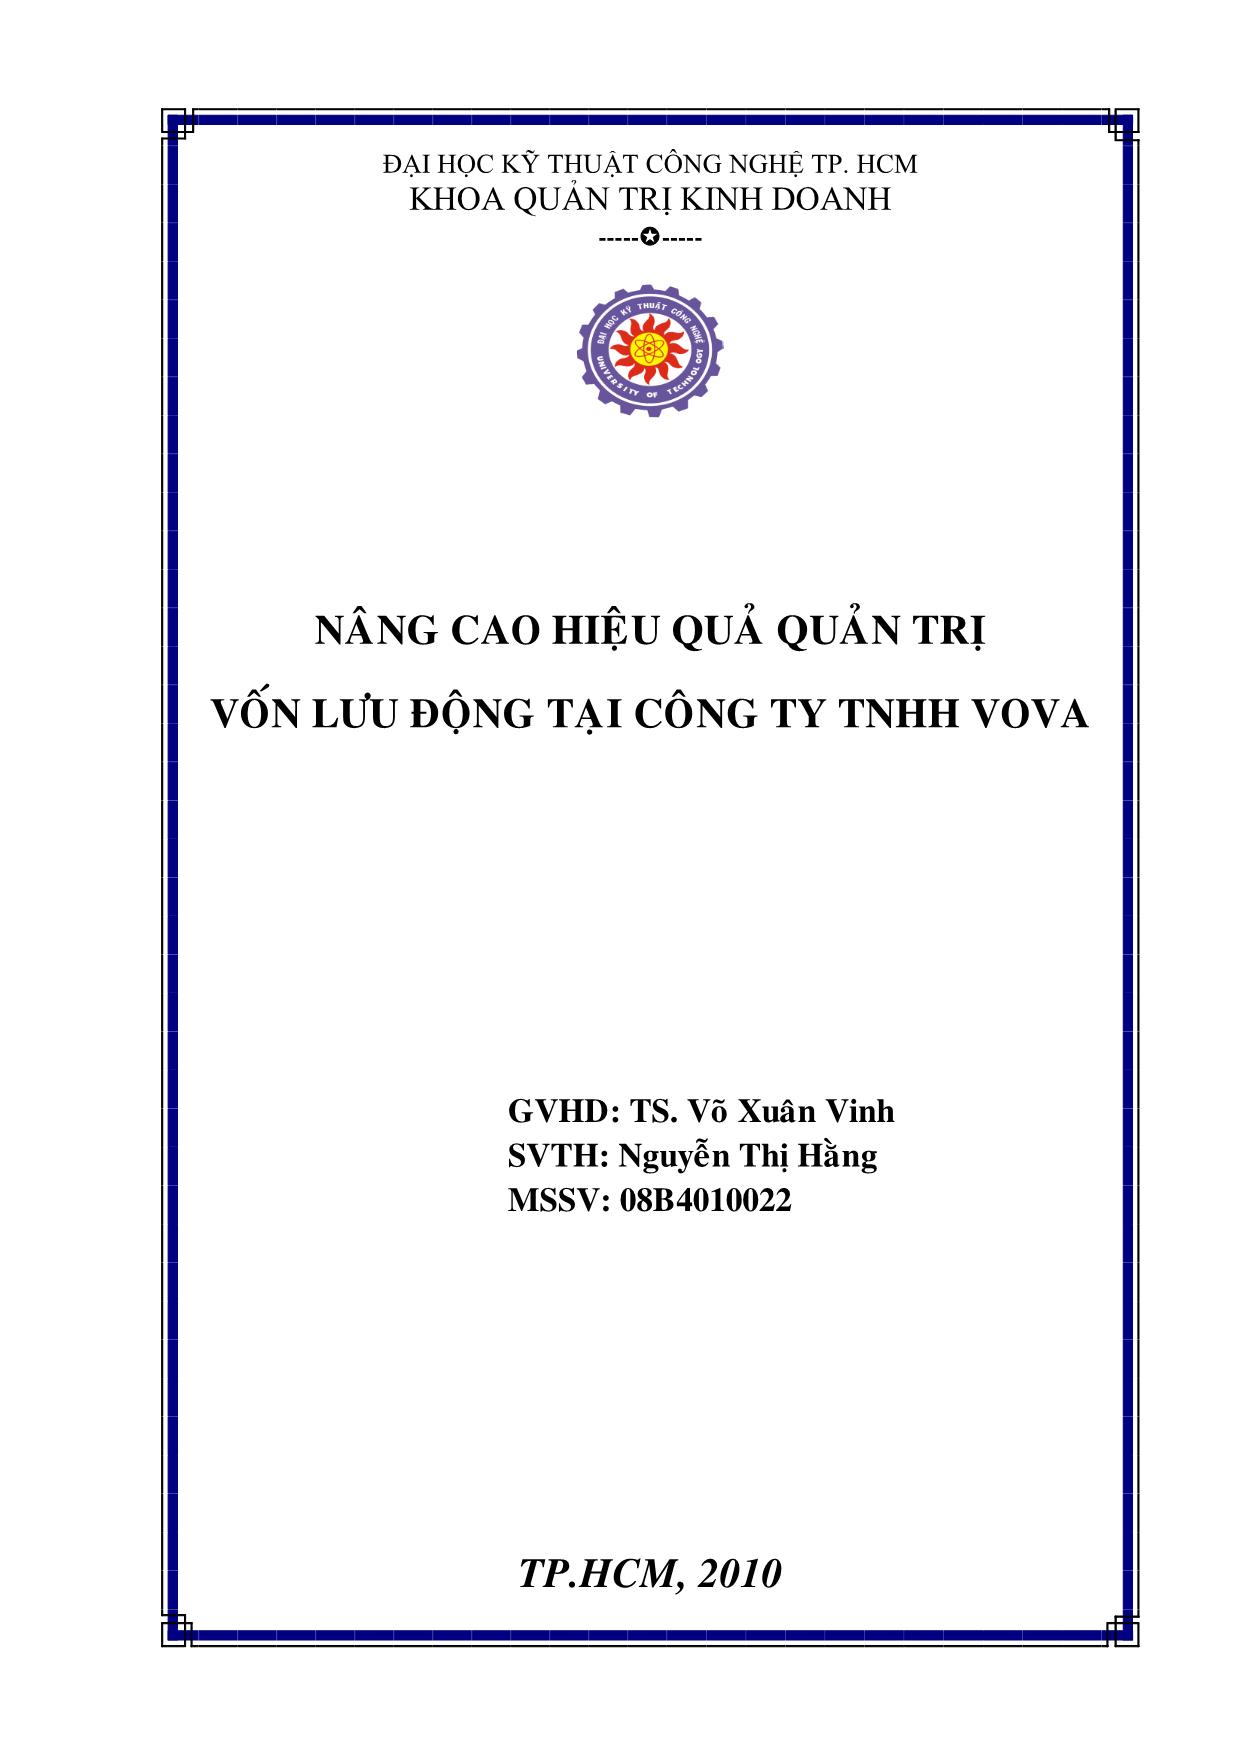 Chuyên đề Nâng cao hiệu quả quản trị vốn lưu động tại công ty TNHH VOVA trang 2